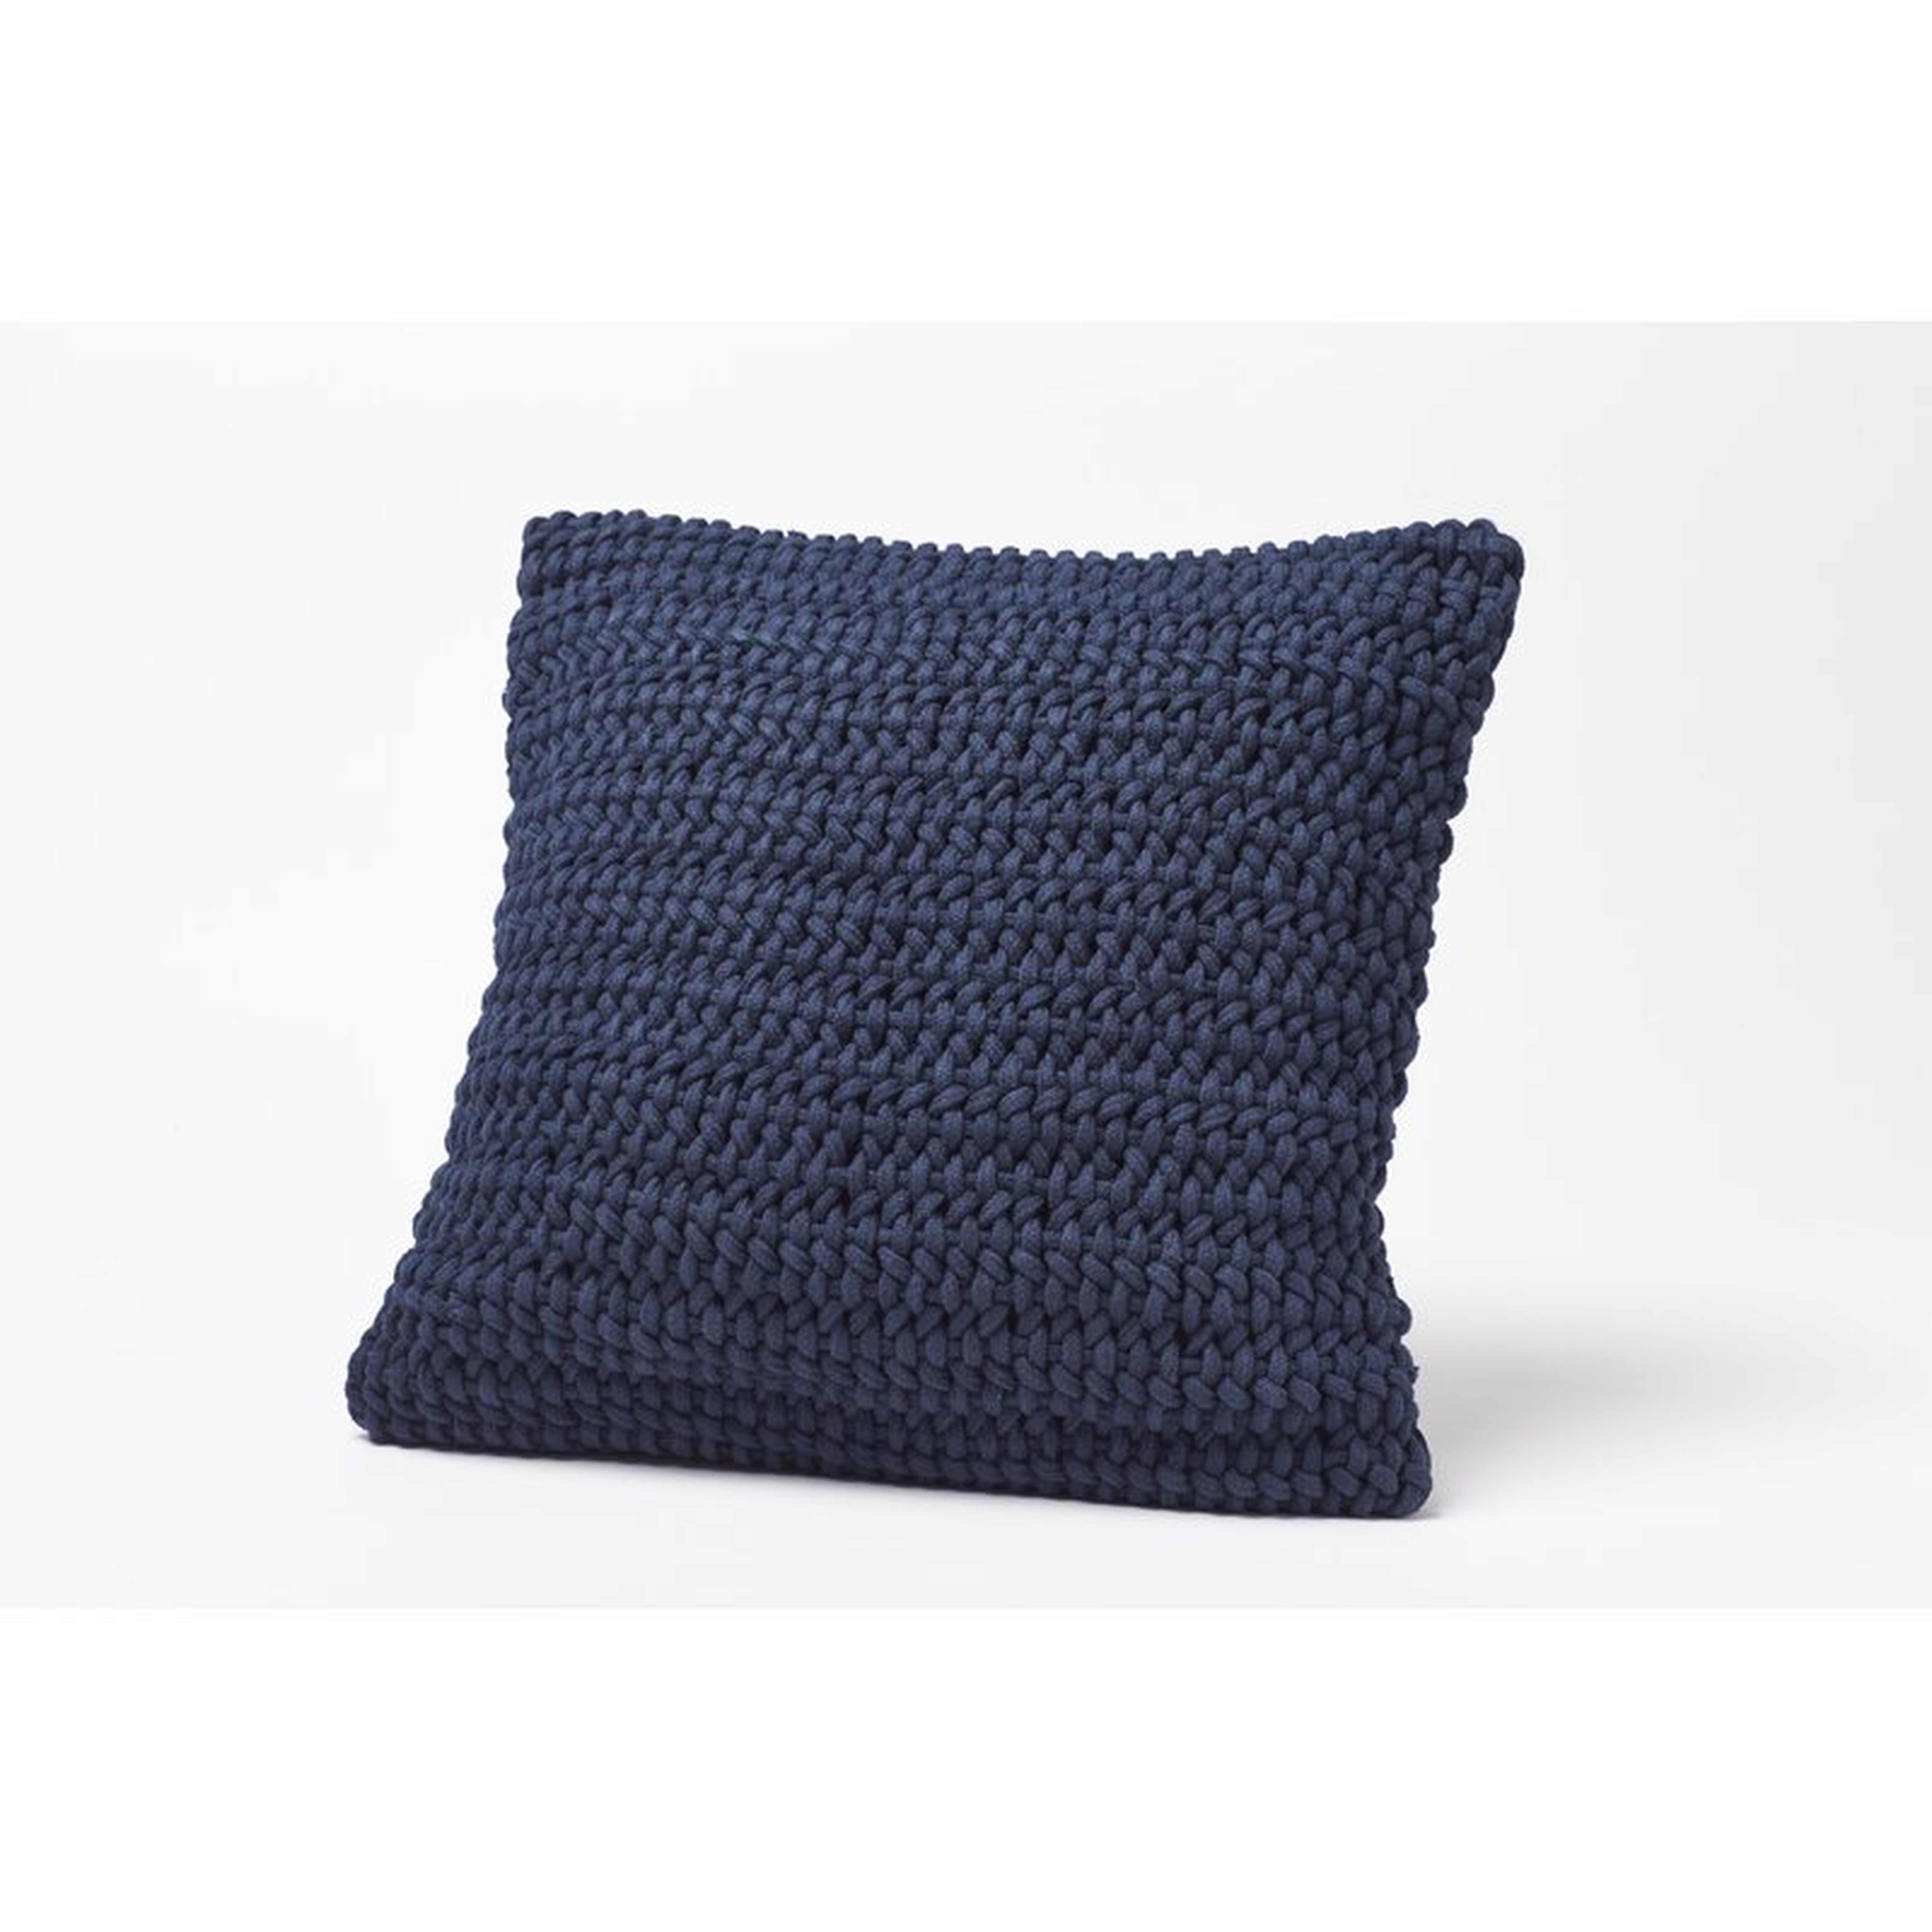 Coyuchi Woven Rope Cotton 22" Throw Pillow Cover Color: Indigo - Perigold